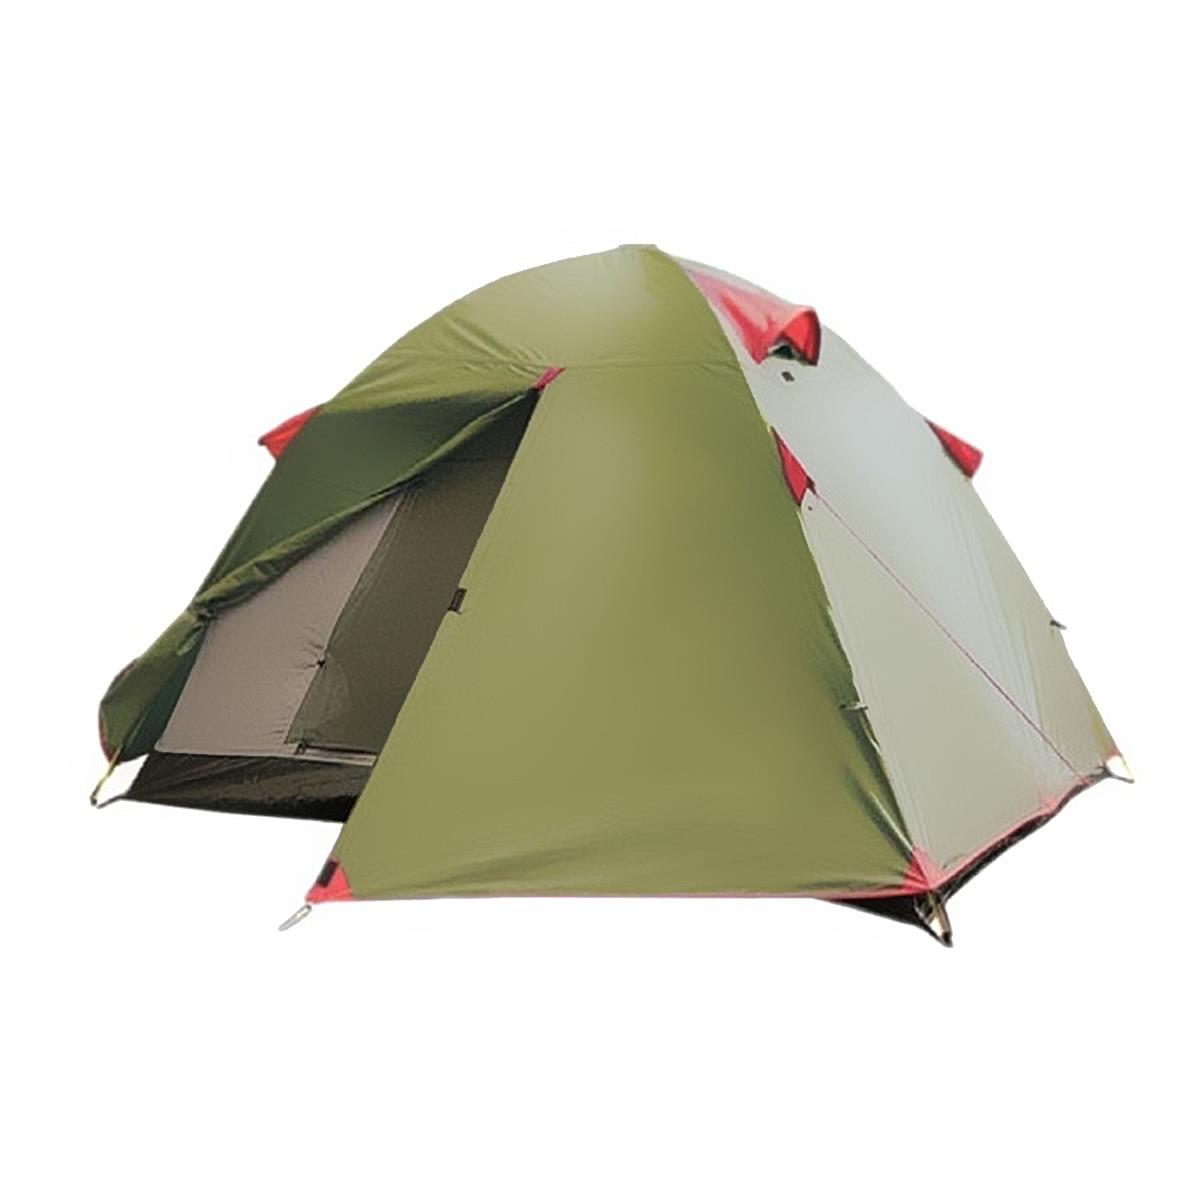 Туристическая палатка LITE TOURIST 2 TLT-004.06 Tramp палатка шатер trimm shelters sunshield песочный 45571